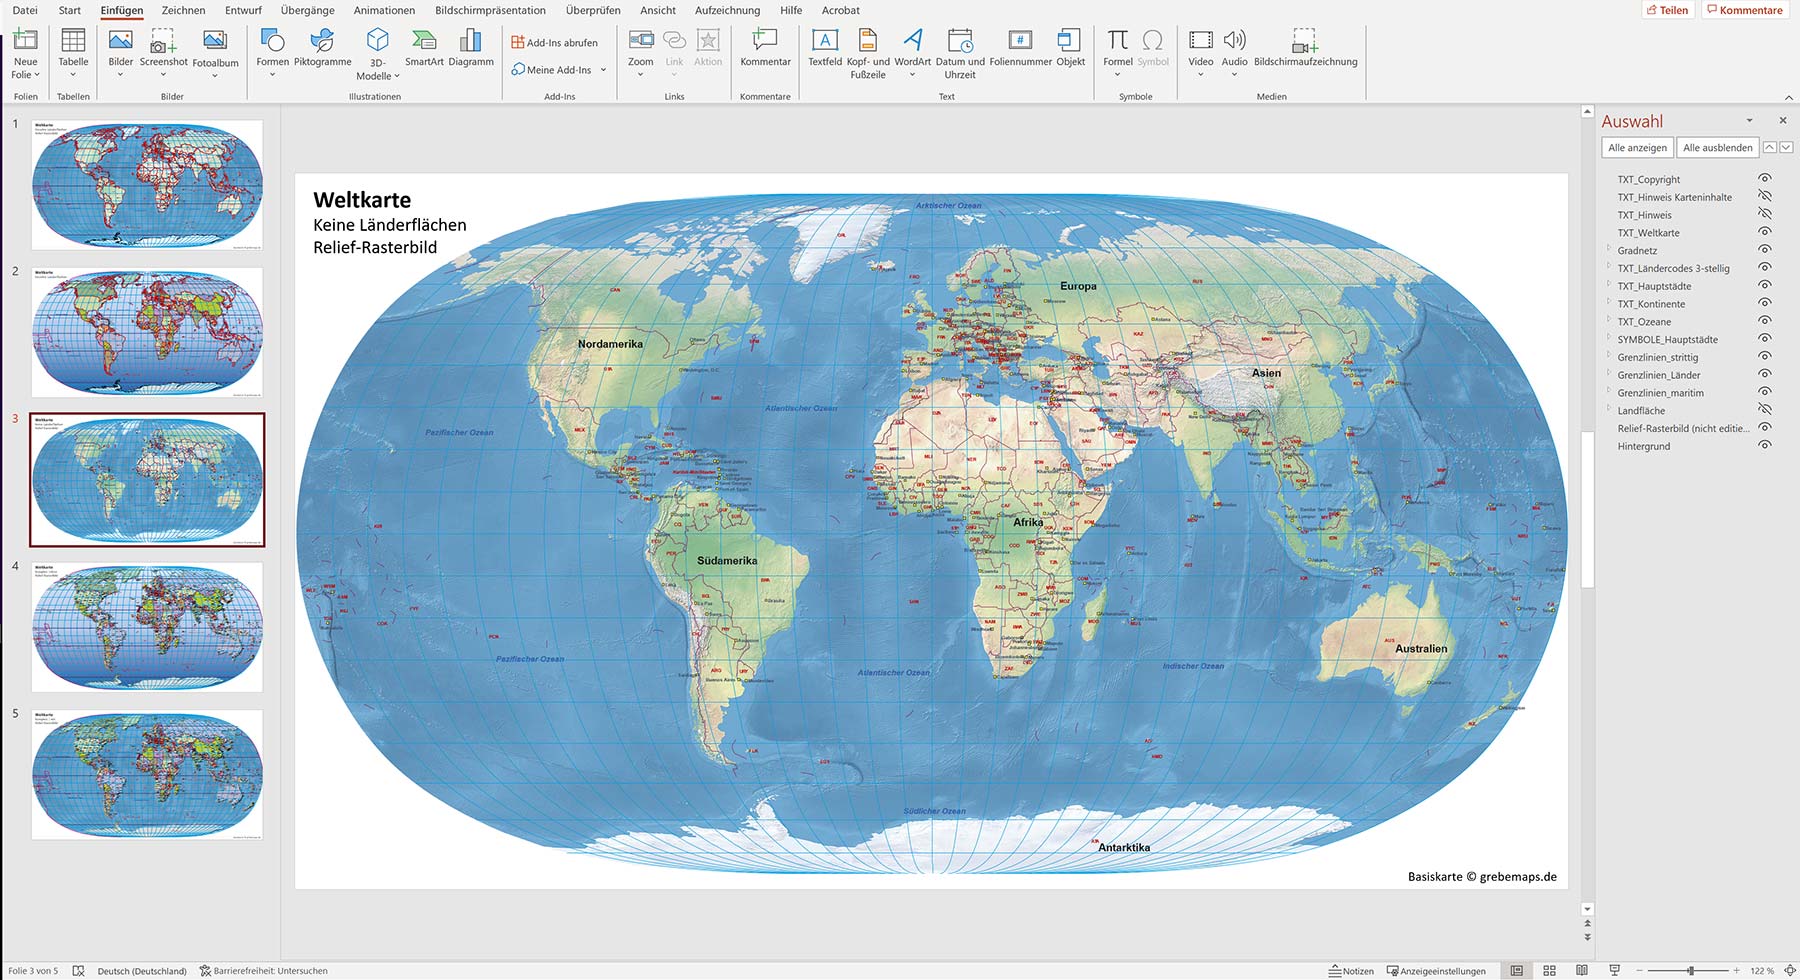 PowerPoint-Karte Weltkarte politisch und physisch mit Ländern zum Einfärben  und Bearbeiten als Download - grebemaps® B2B-KartenShop (GKB)